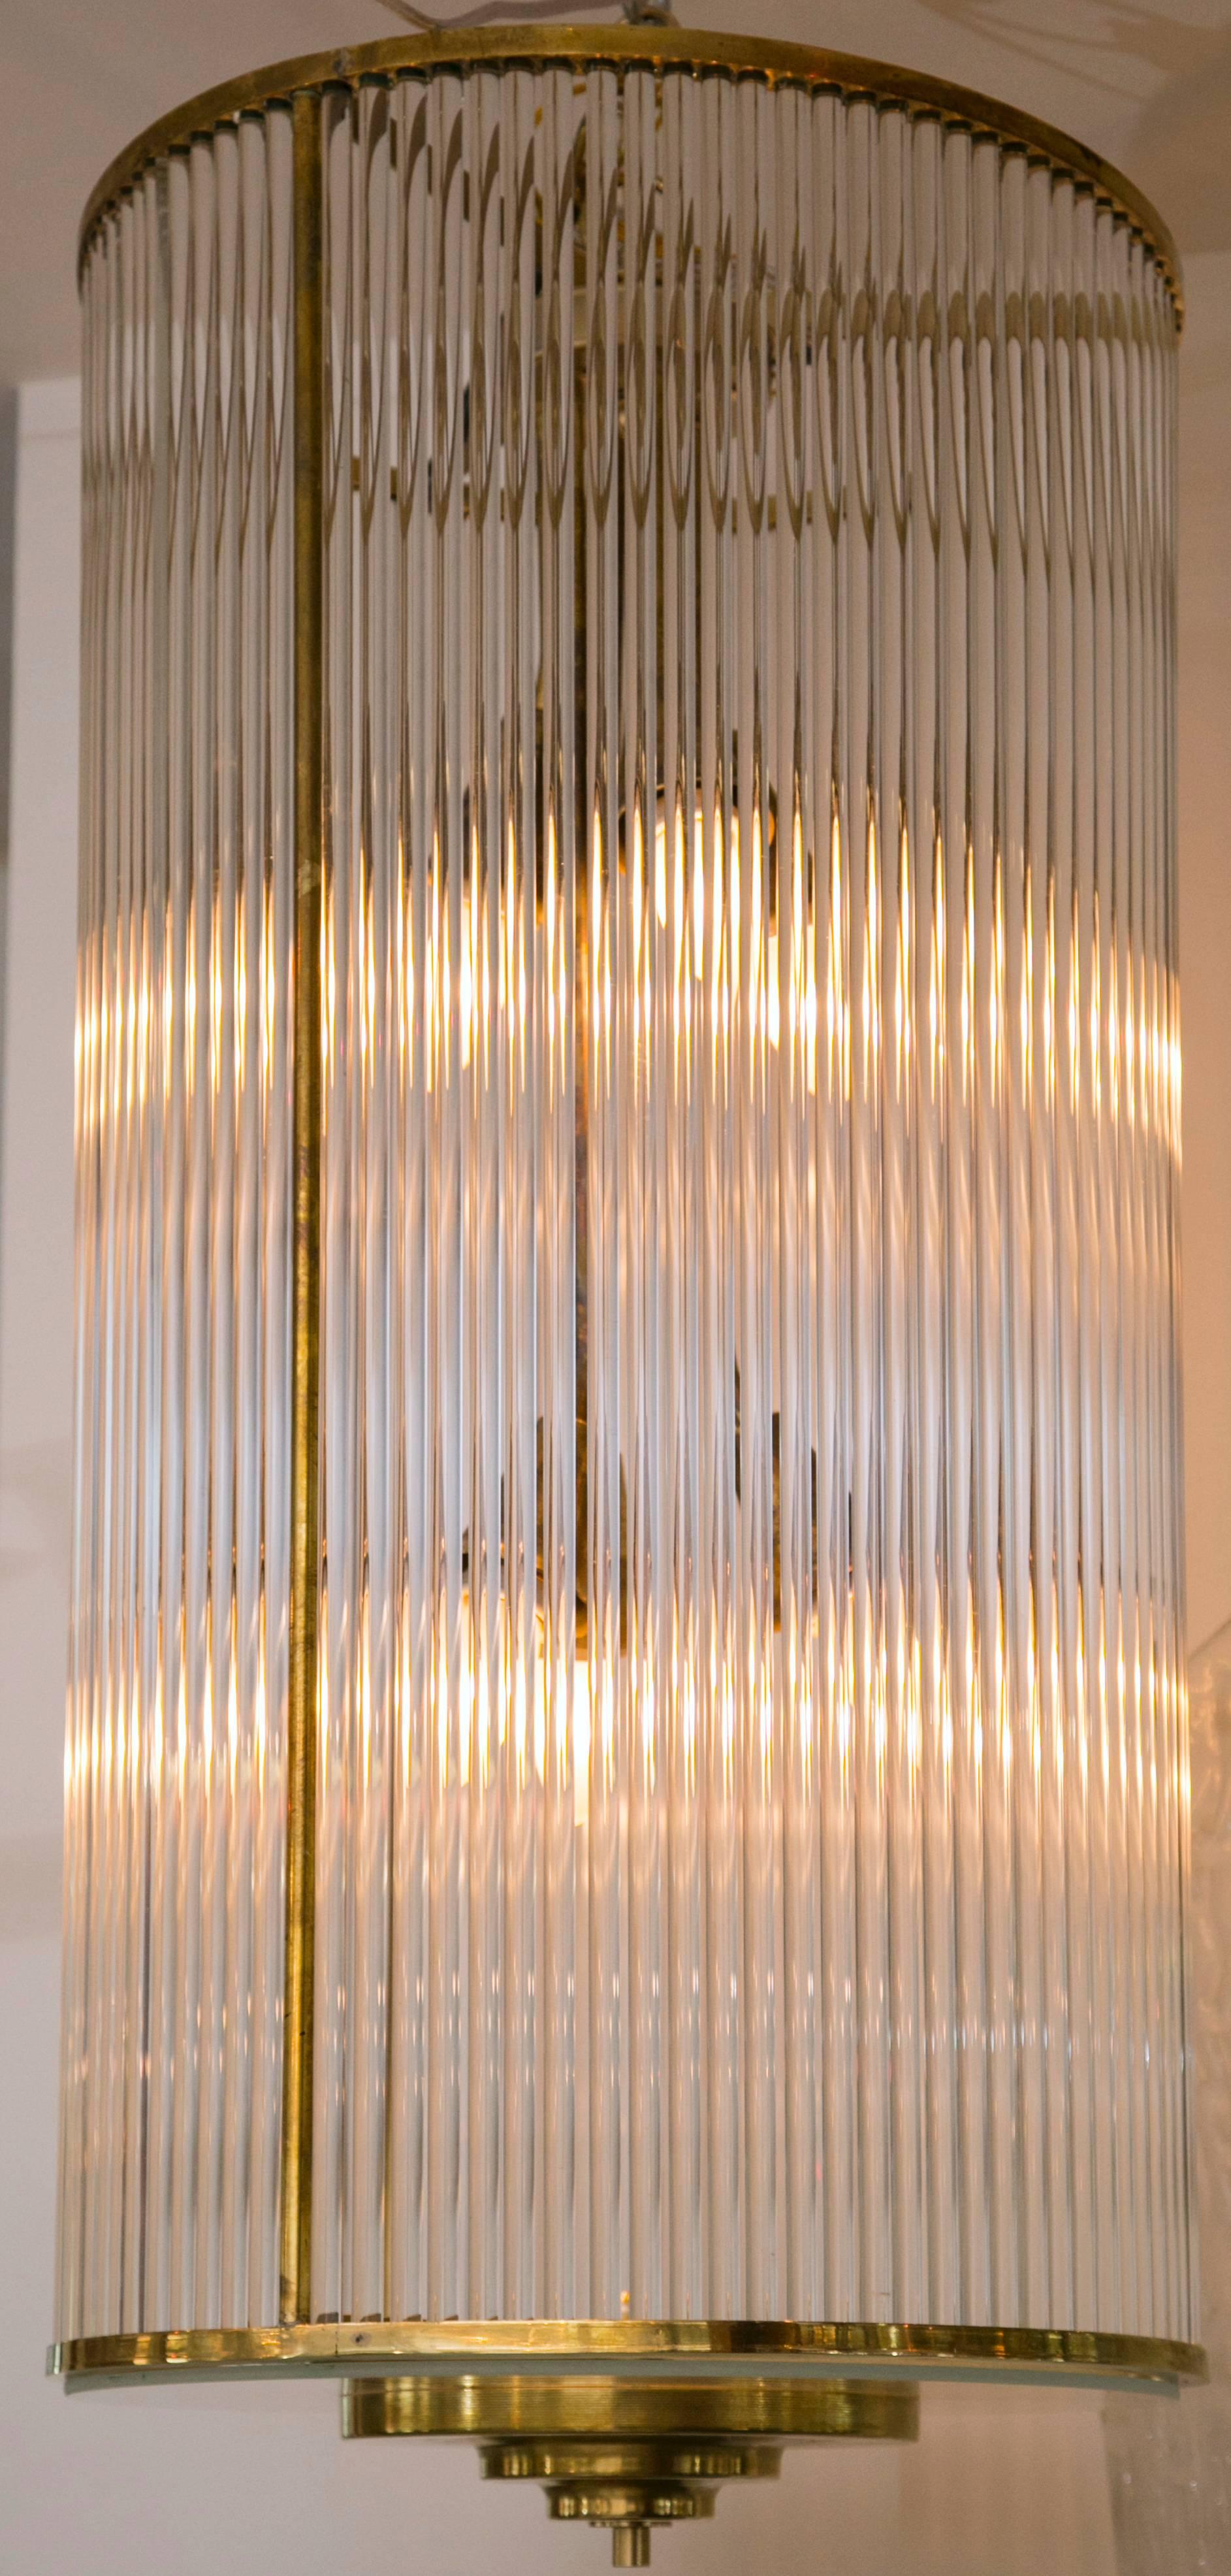 Schöne, lange, zylindrische Messinglaterne mit Glasstäben, beleuchtet mit sechs gestaffelten Glühbirnen mit Standardsockel für volle Beleuchtung.
Abmessungen des Glases 32 